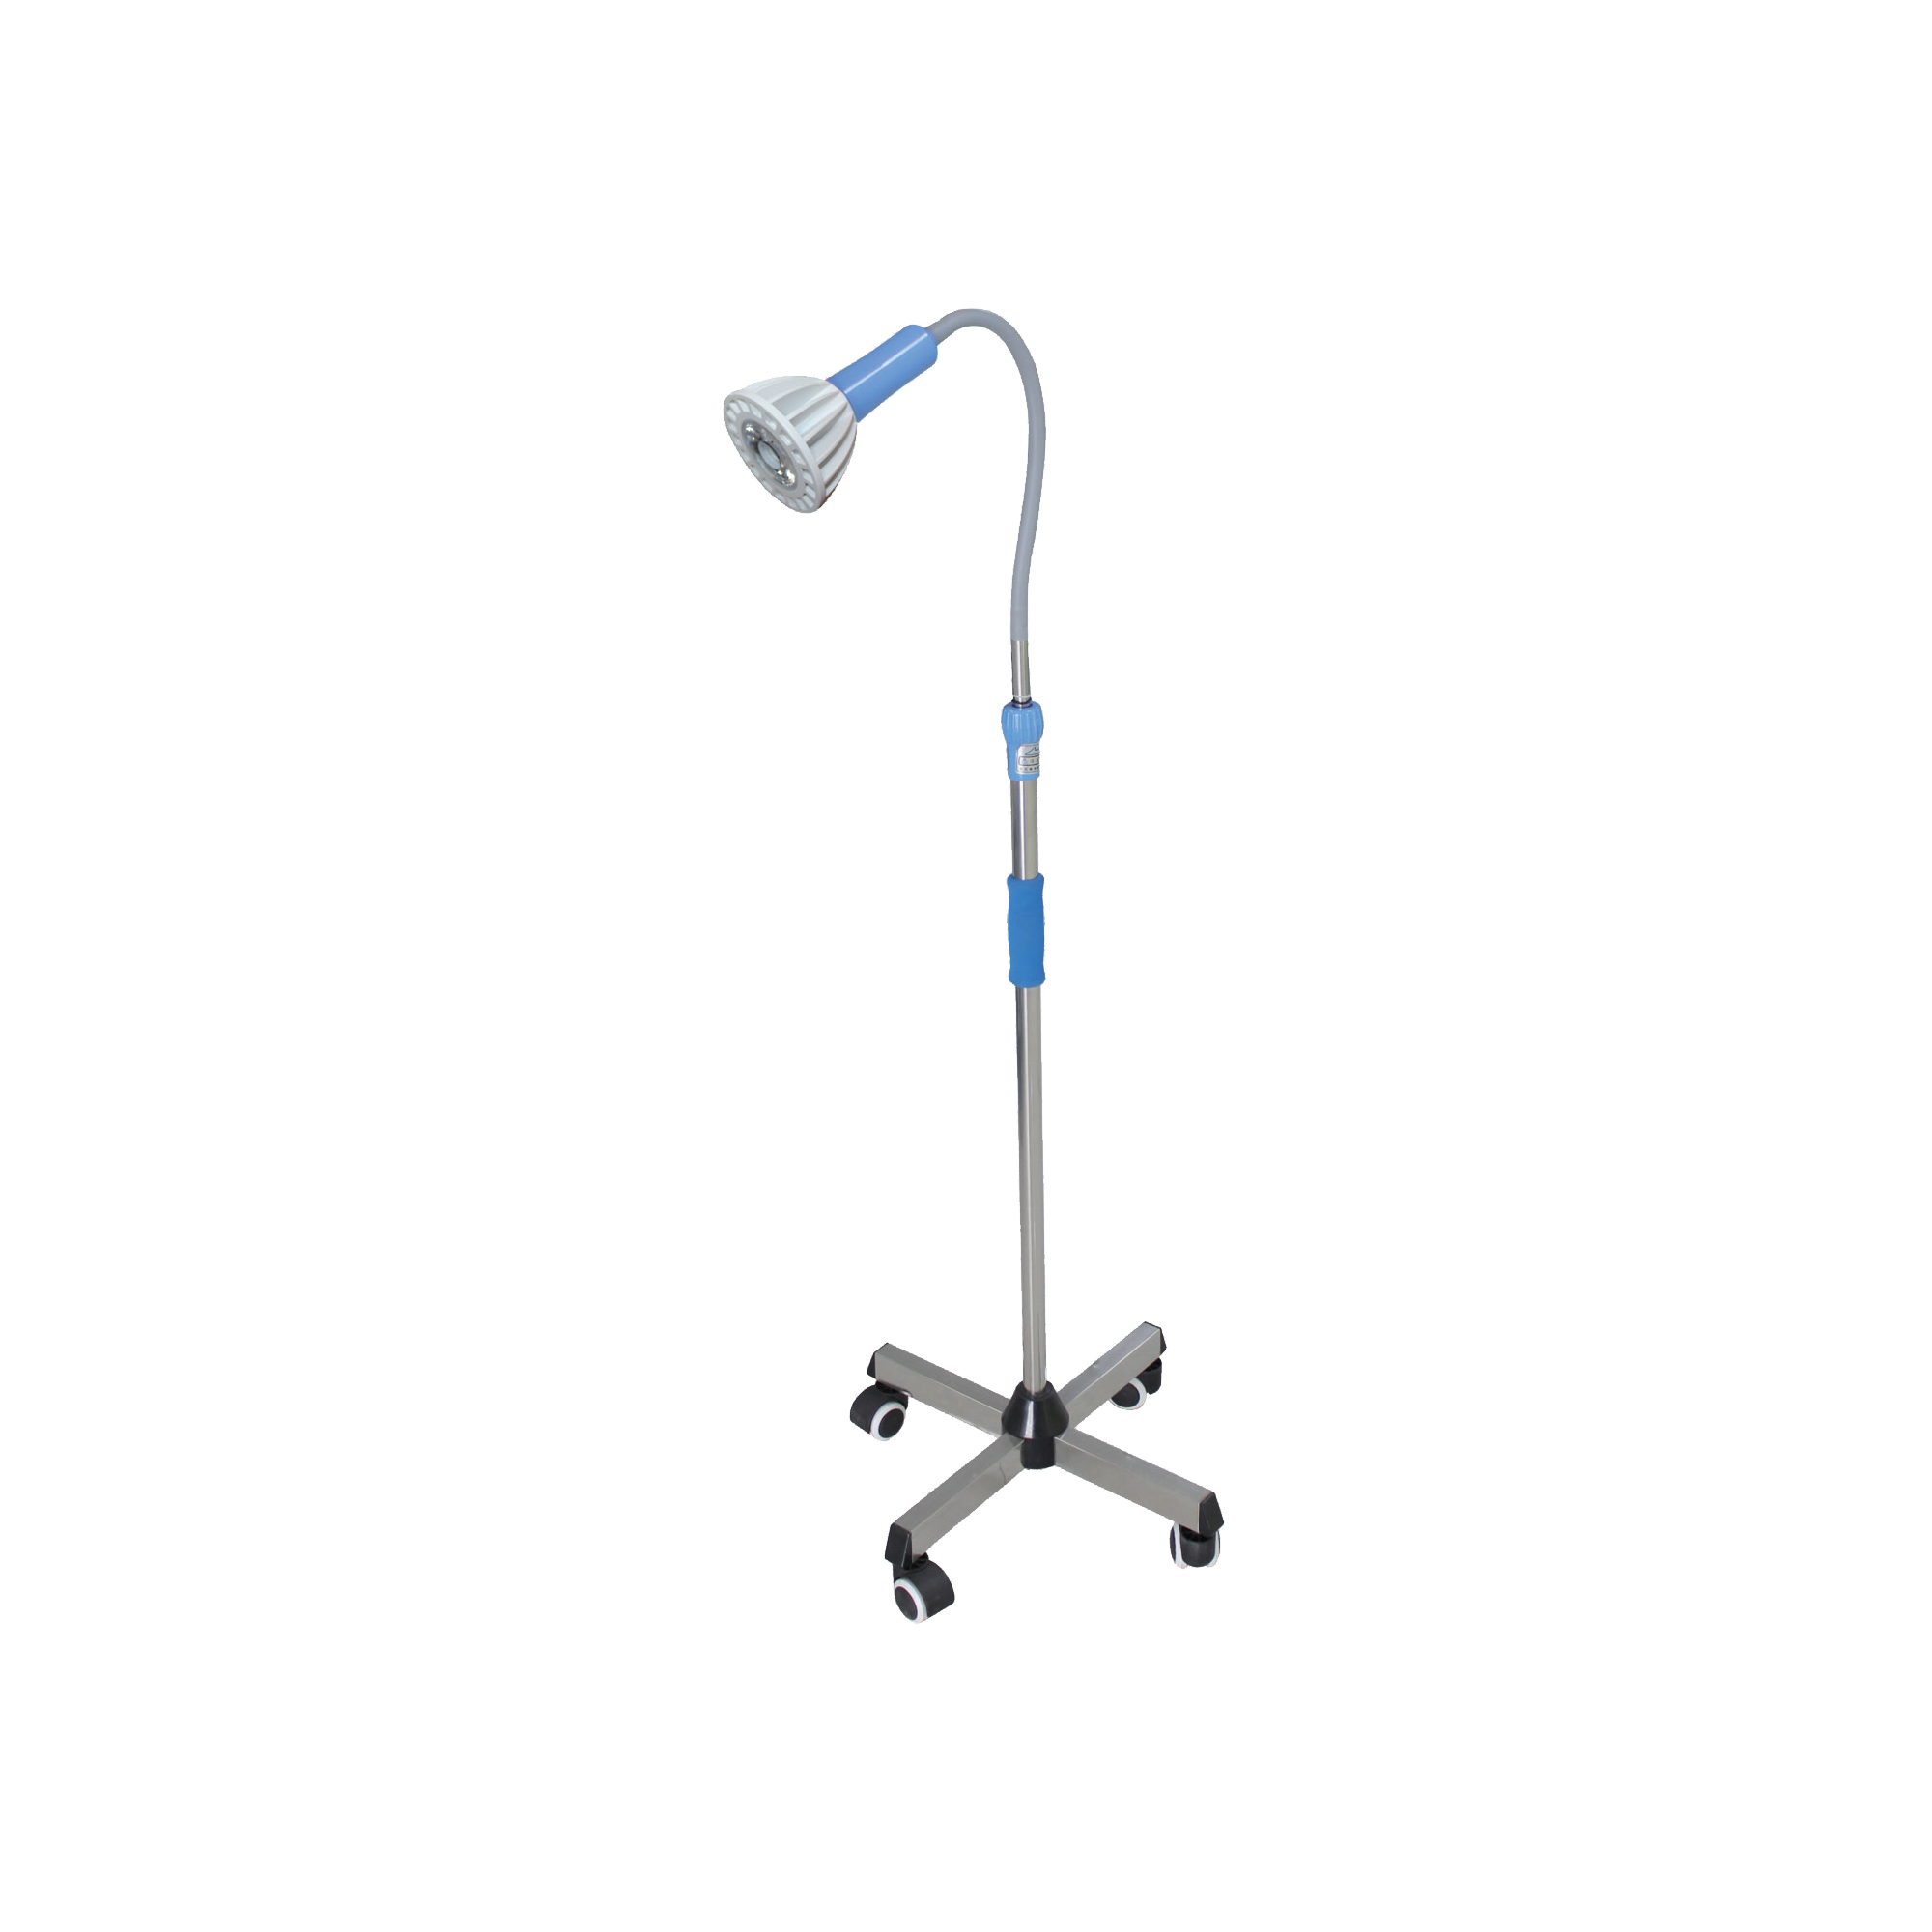 Цветочный медицинский FDL гинекологический светодиодный медицинский хирургический светильник для осмотра, мобильная синяя холодная стоматологическая терапевтическая лампа для осмотра